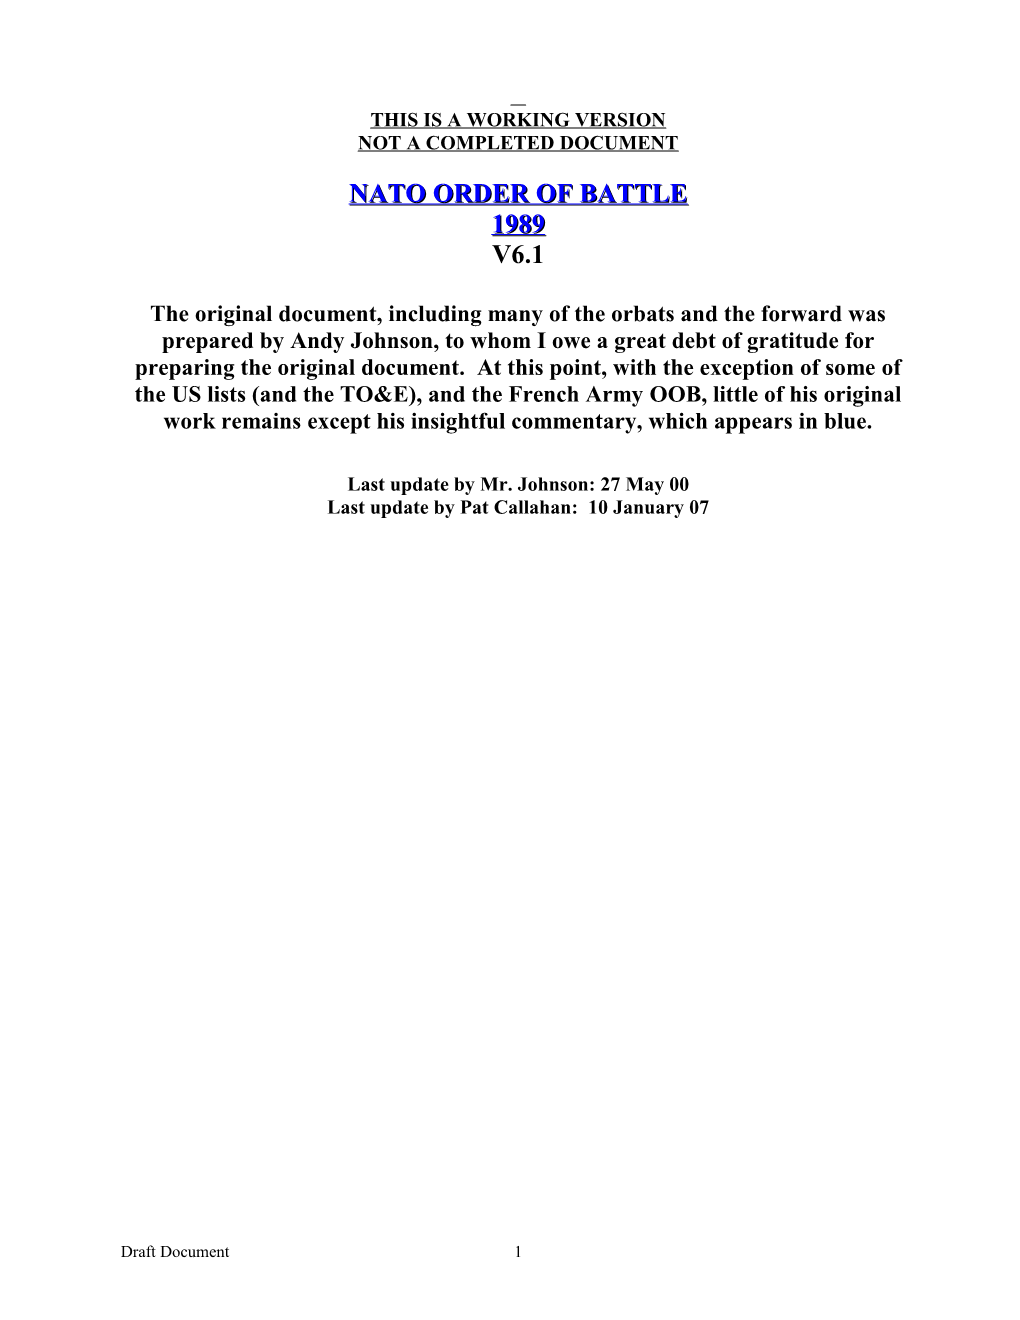 NATO Order of Battle 1989 Mod 5